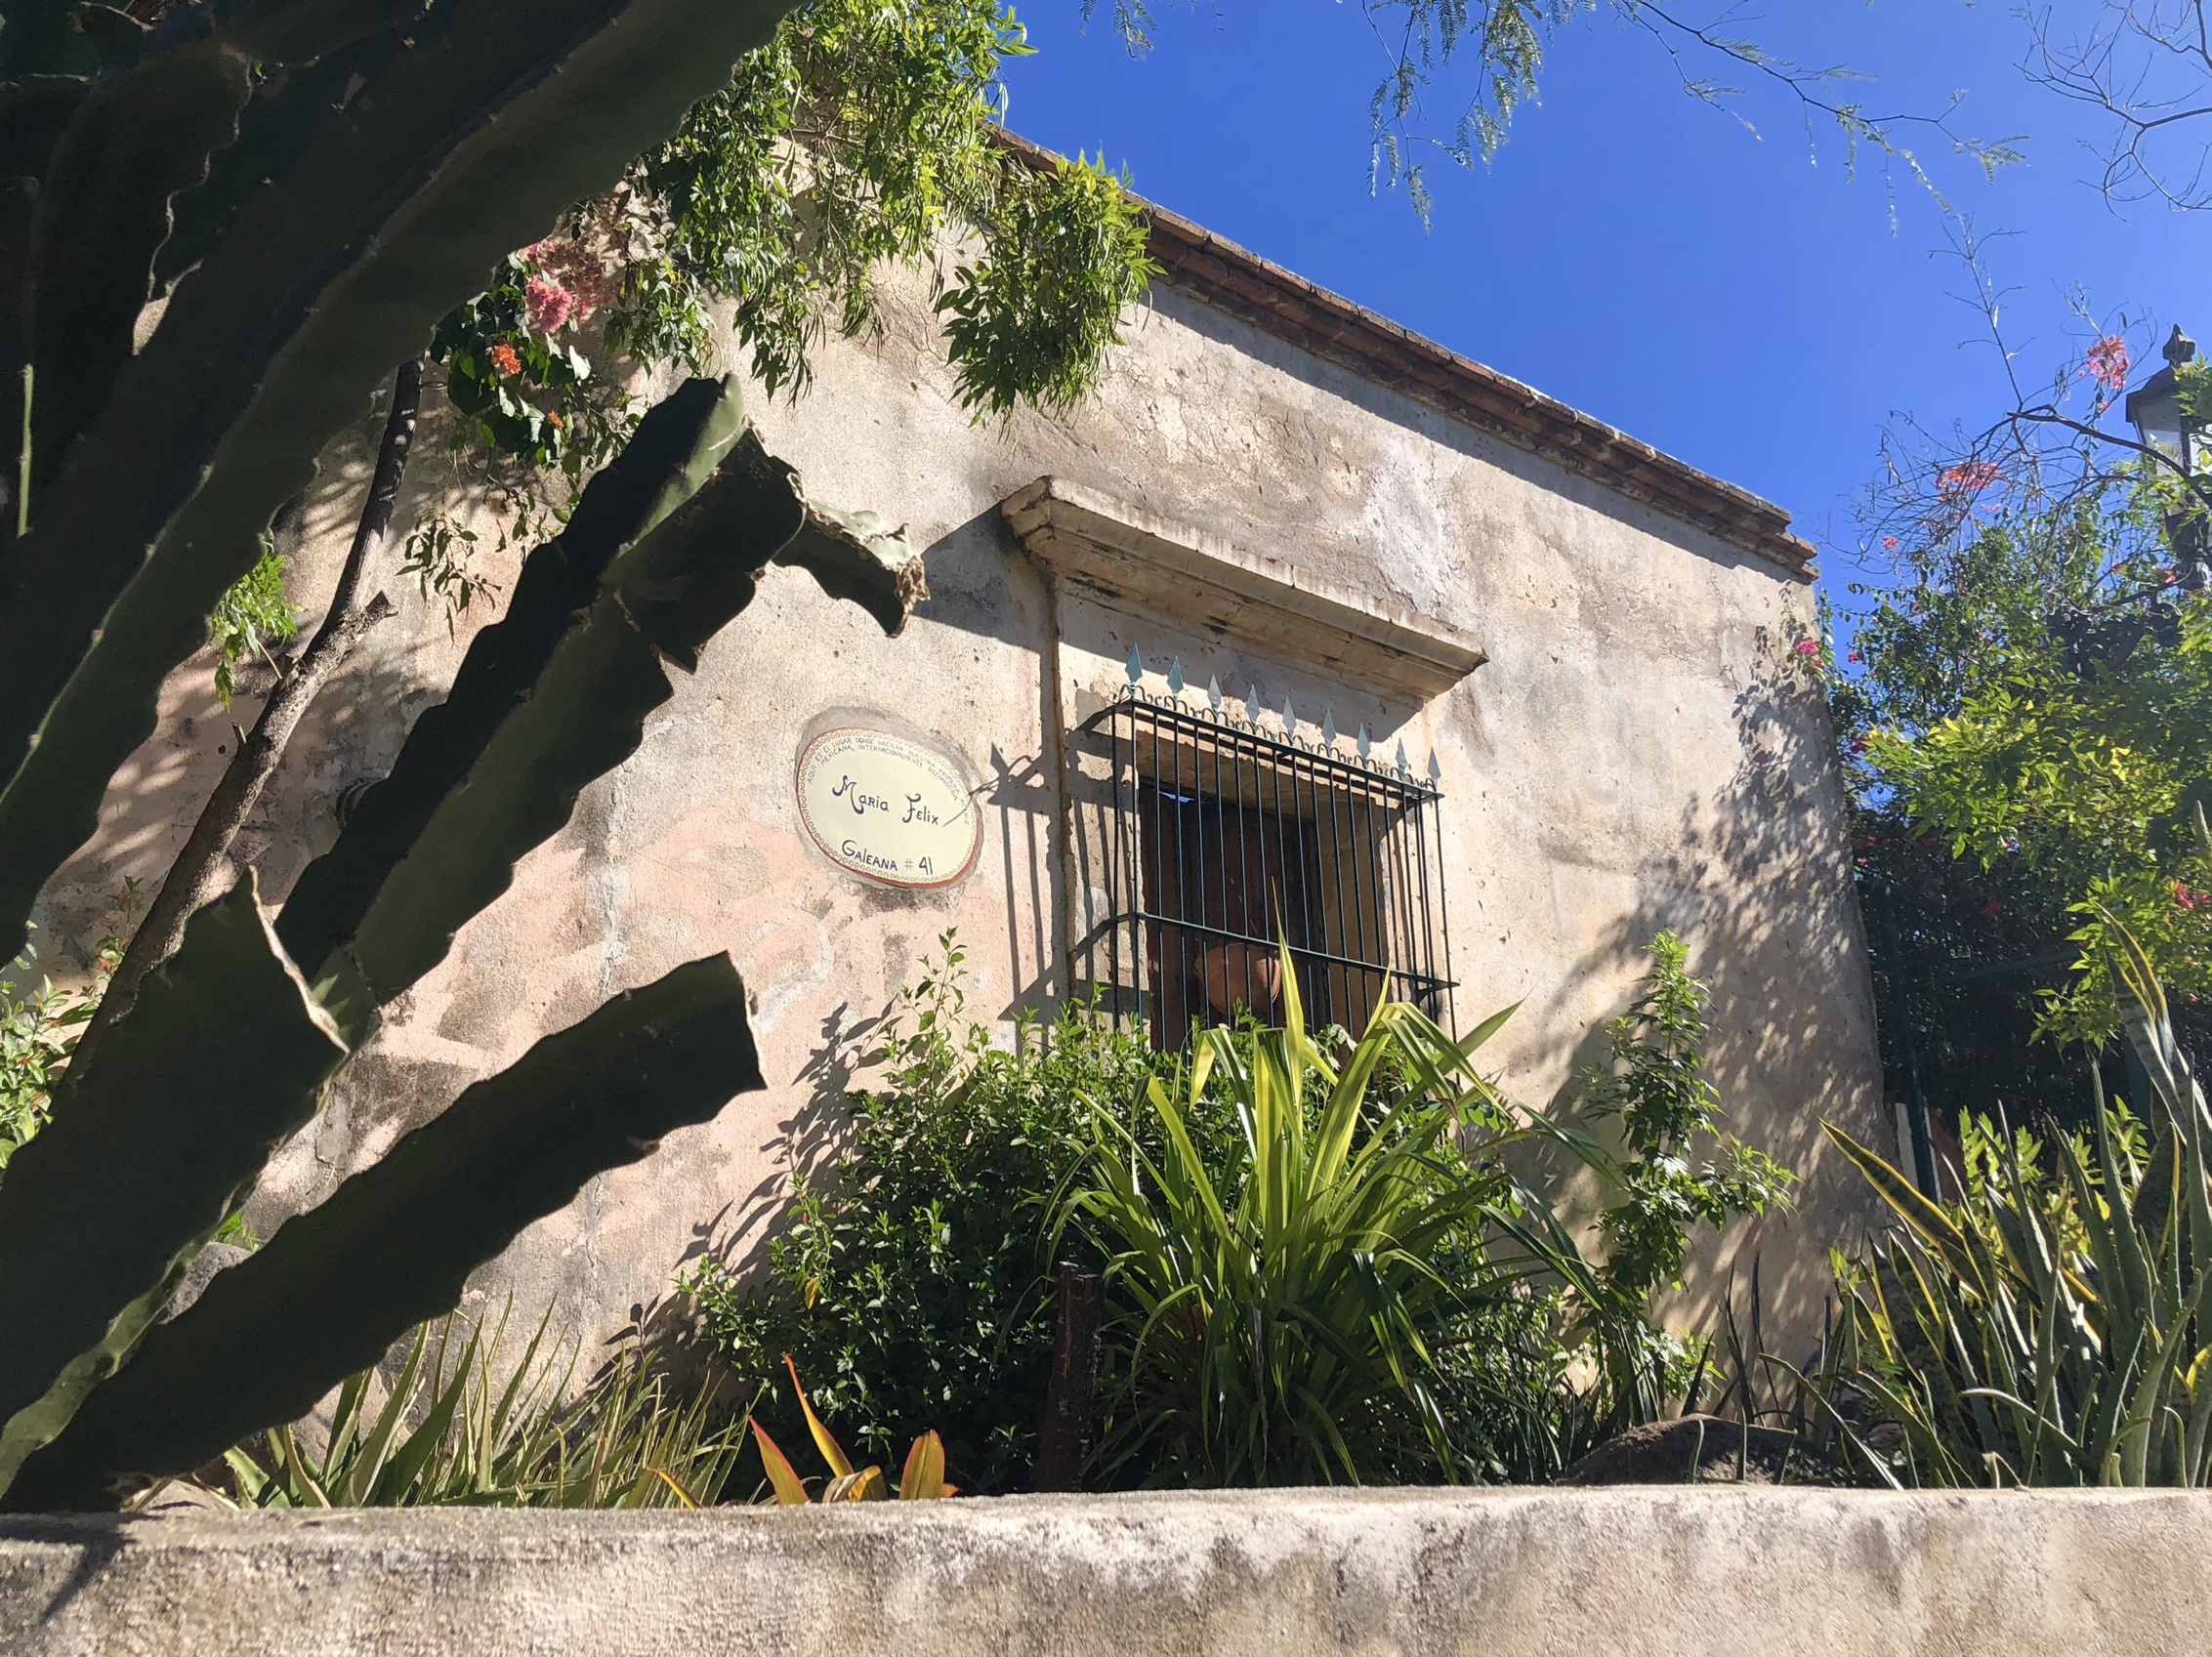 Casa de María Félix en Álamos, a la venta tras haber sido museo